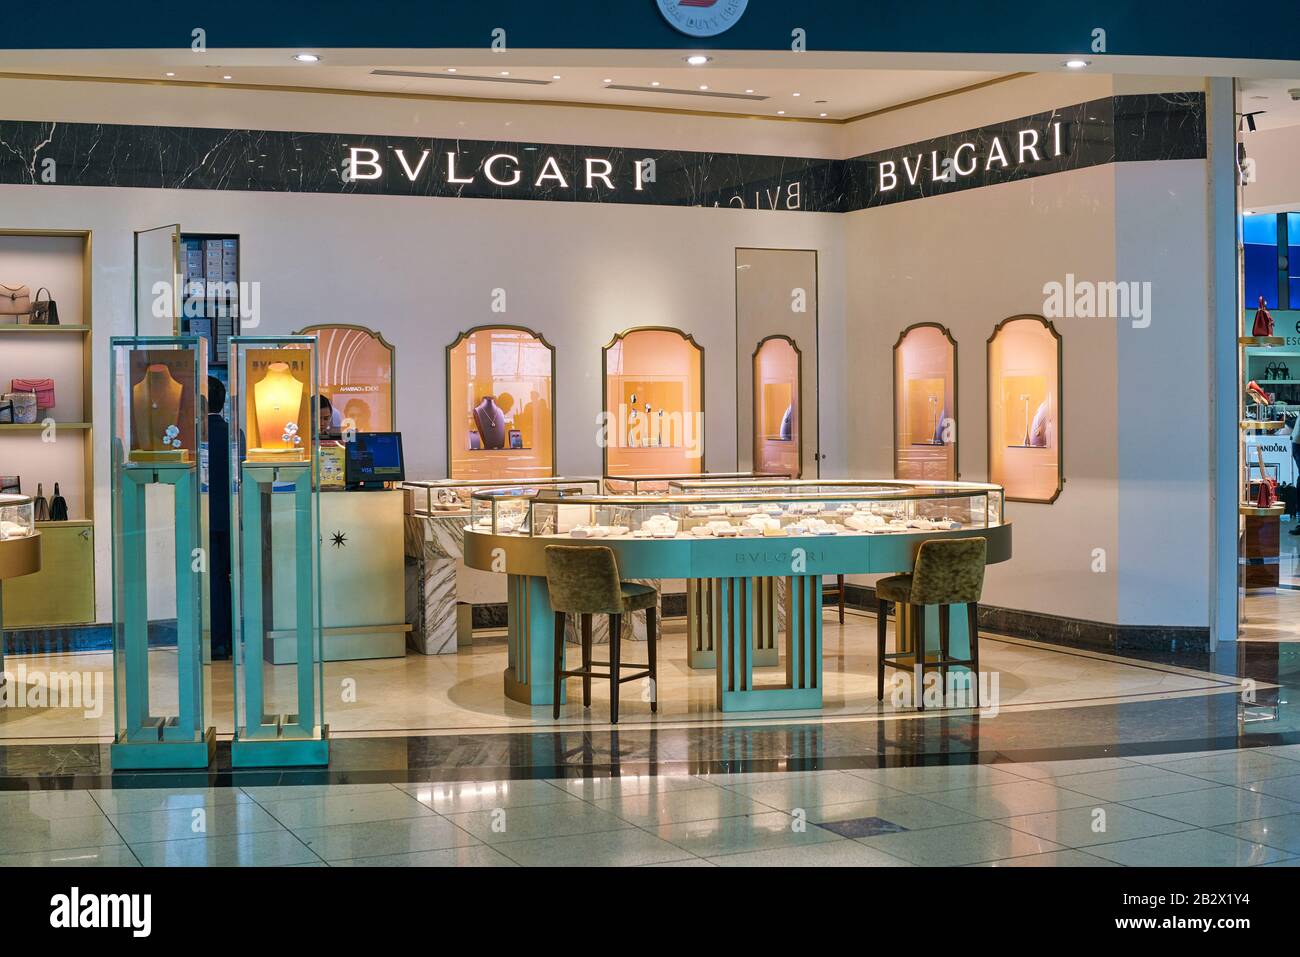 Dubaï, Émirats arabes Unis - VERS JANVIER 2019 : produits Bvlgari exposés dans un magasin de l'aéroport international de Dubaï. Banque D'Images